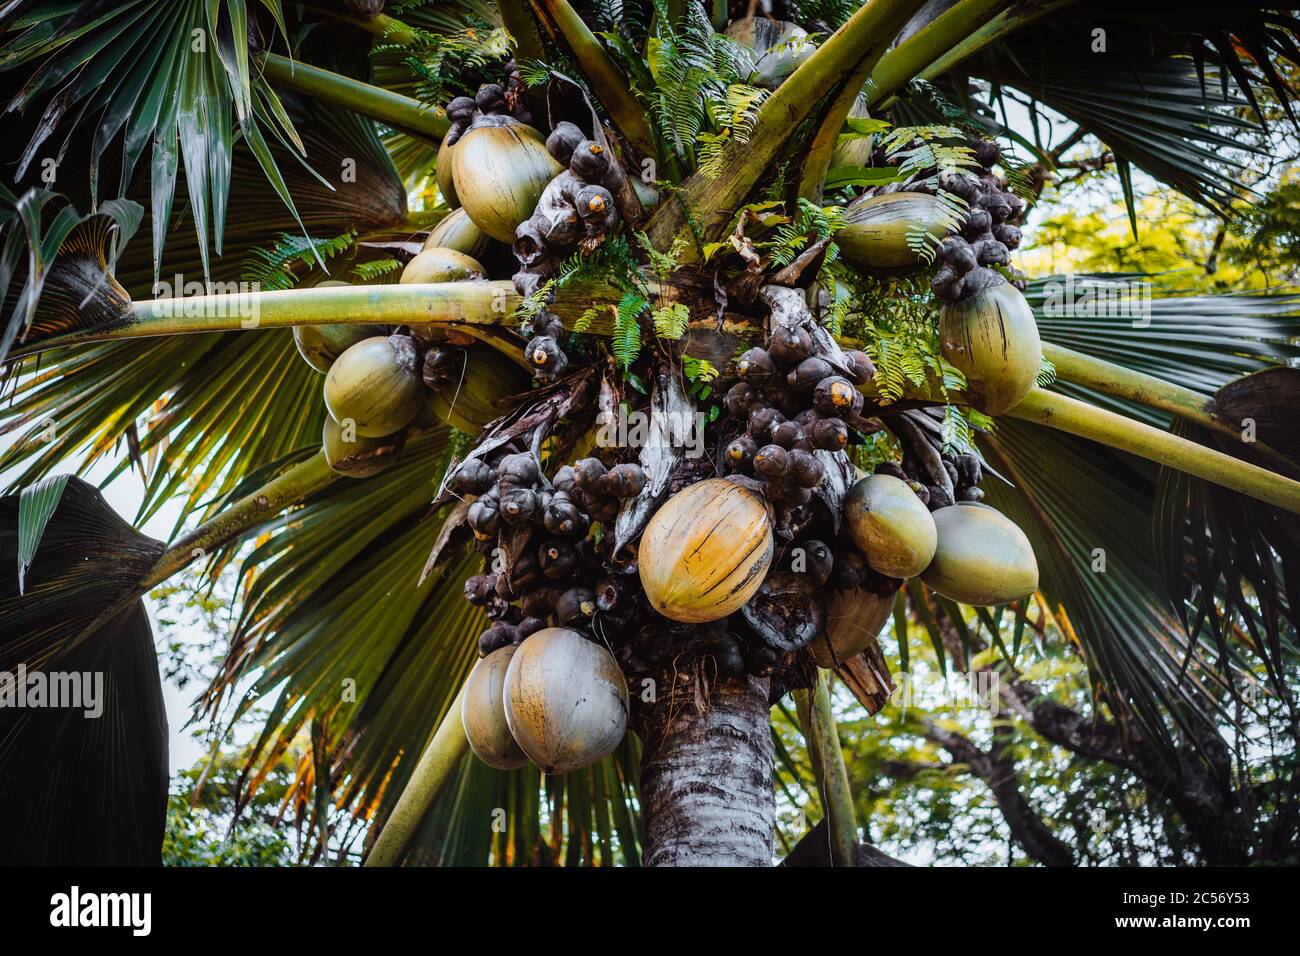 Nahaufnahme von Lodoicea bekannt als Coco de mer oder Doppel-Kokosnuss. Es ist endemisch auf den Inseln Praslin und Curieuse auf den Seychellen. Stockfoto